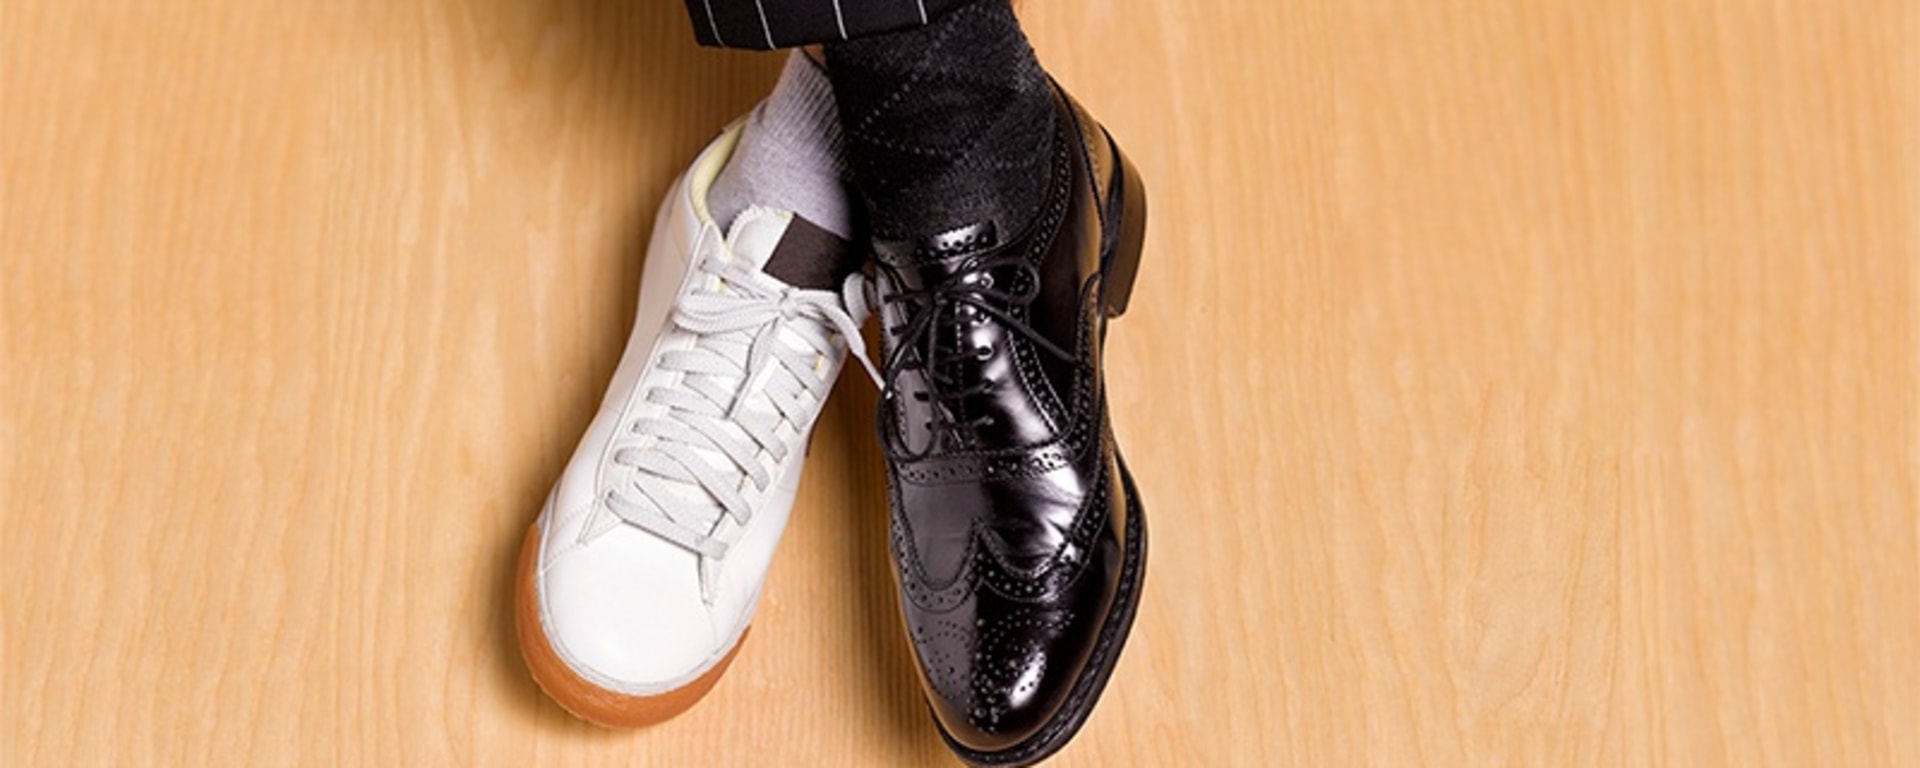 Ein Mann, der schwarze Anzugschuhe und weiße Turnschuhe trägt und damit eine Mischung aus formellem und legerem Schuhwerk präsentiert.